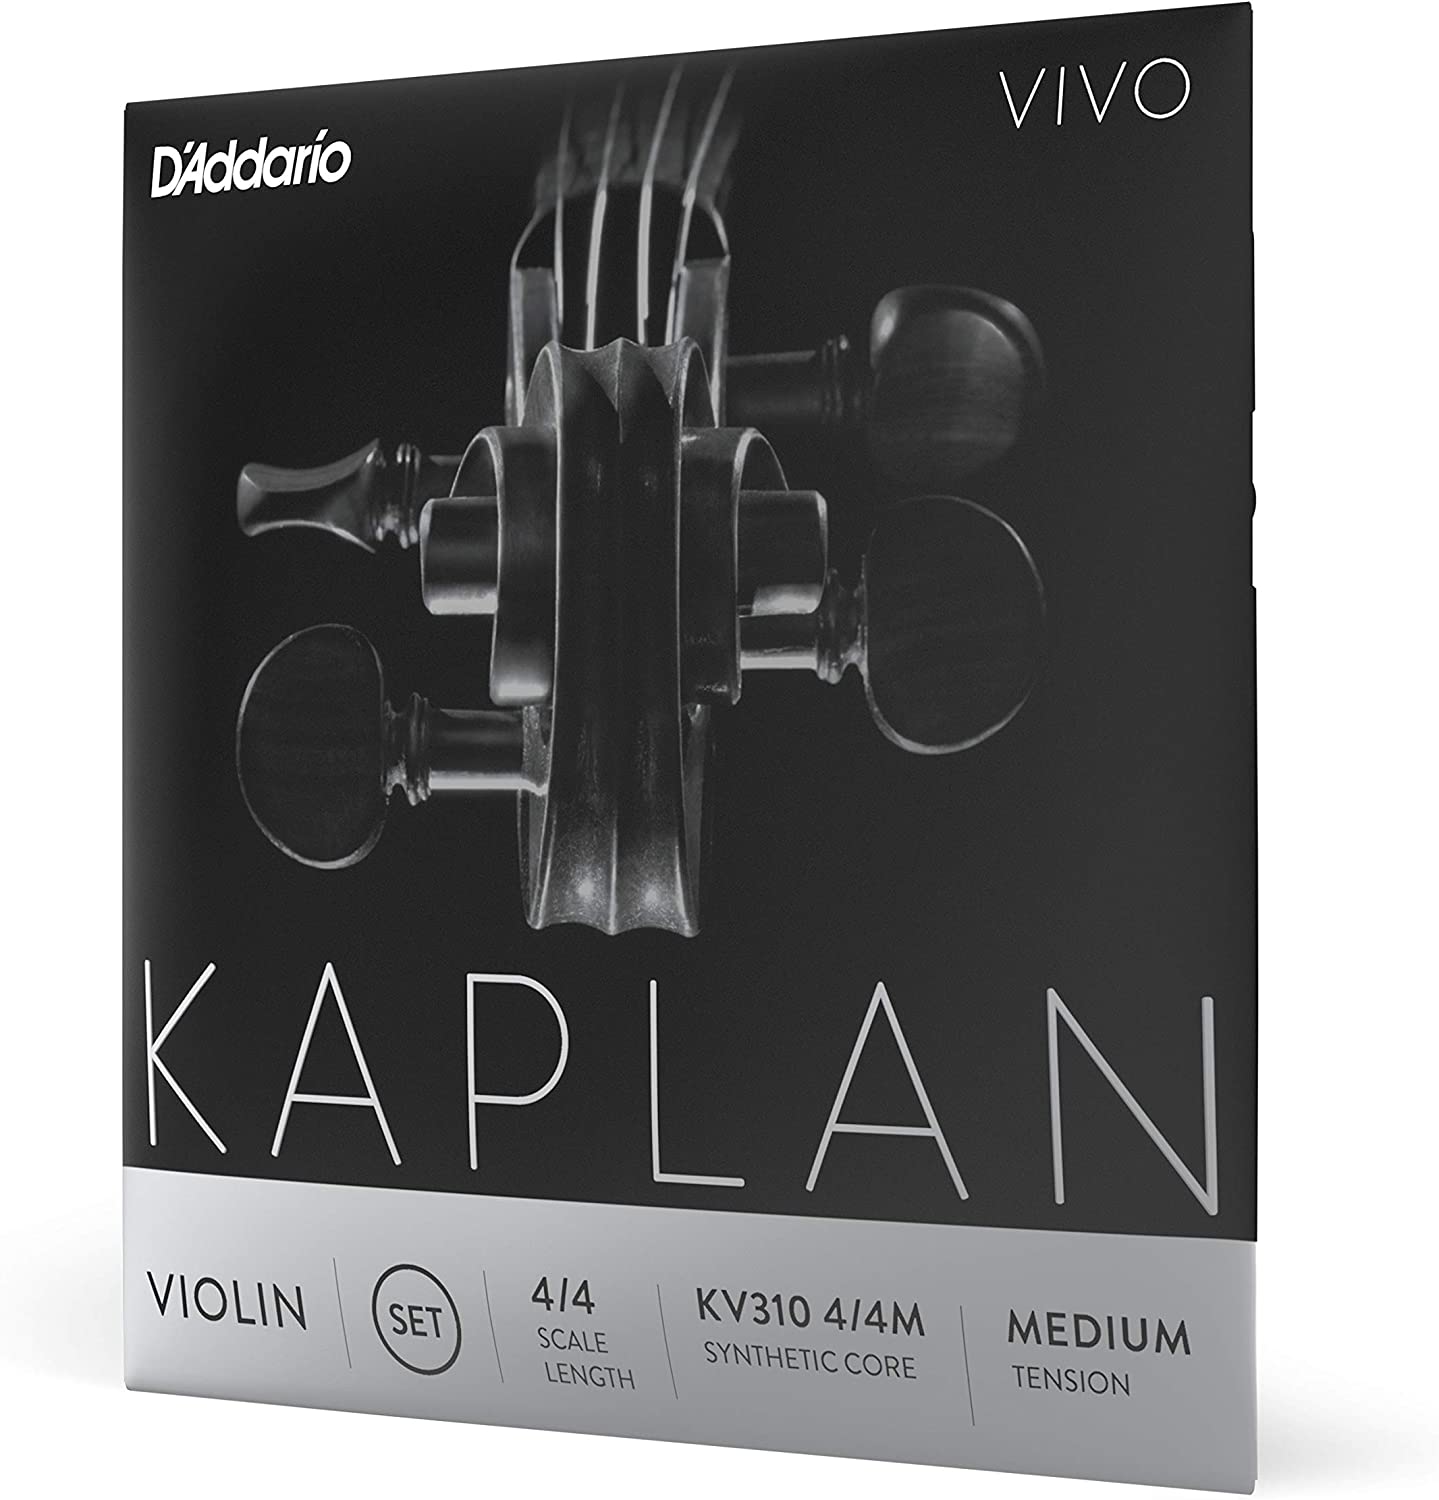 D'Addario Kaplan Vivo Violin String Set, 4/4 Scale, Medium Tension Titanium Nickel Silver G D A E